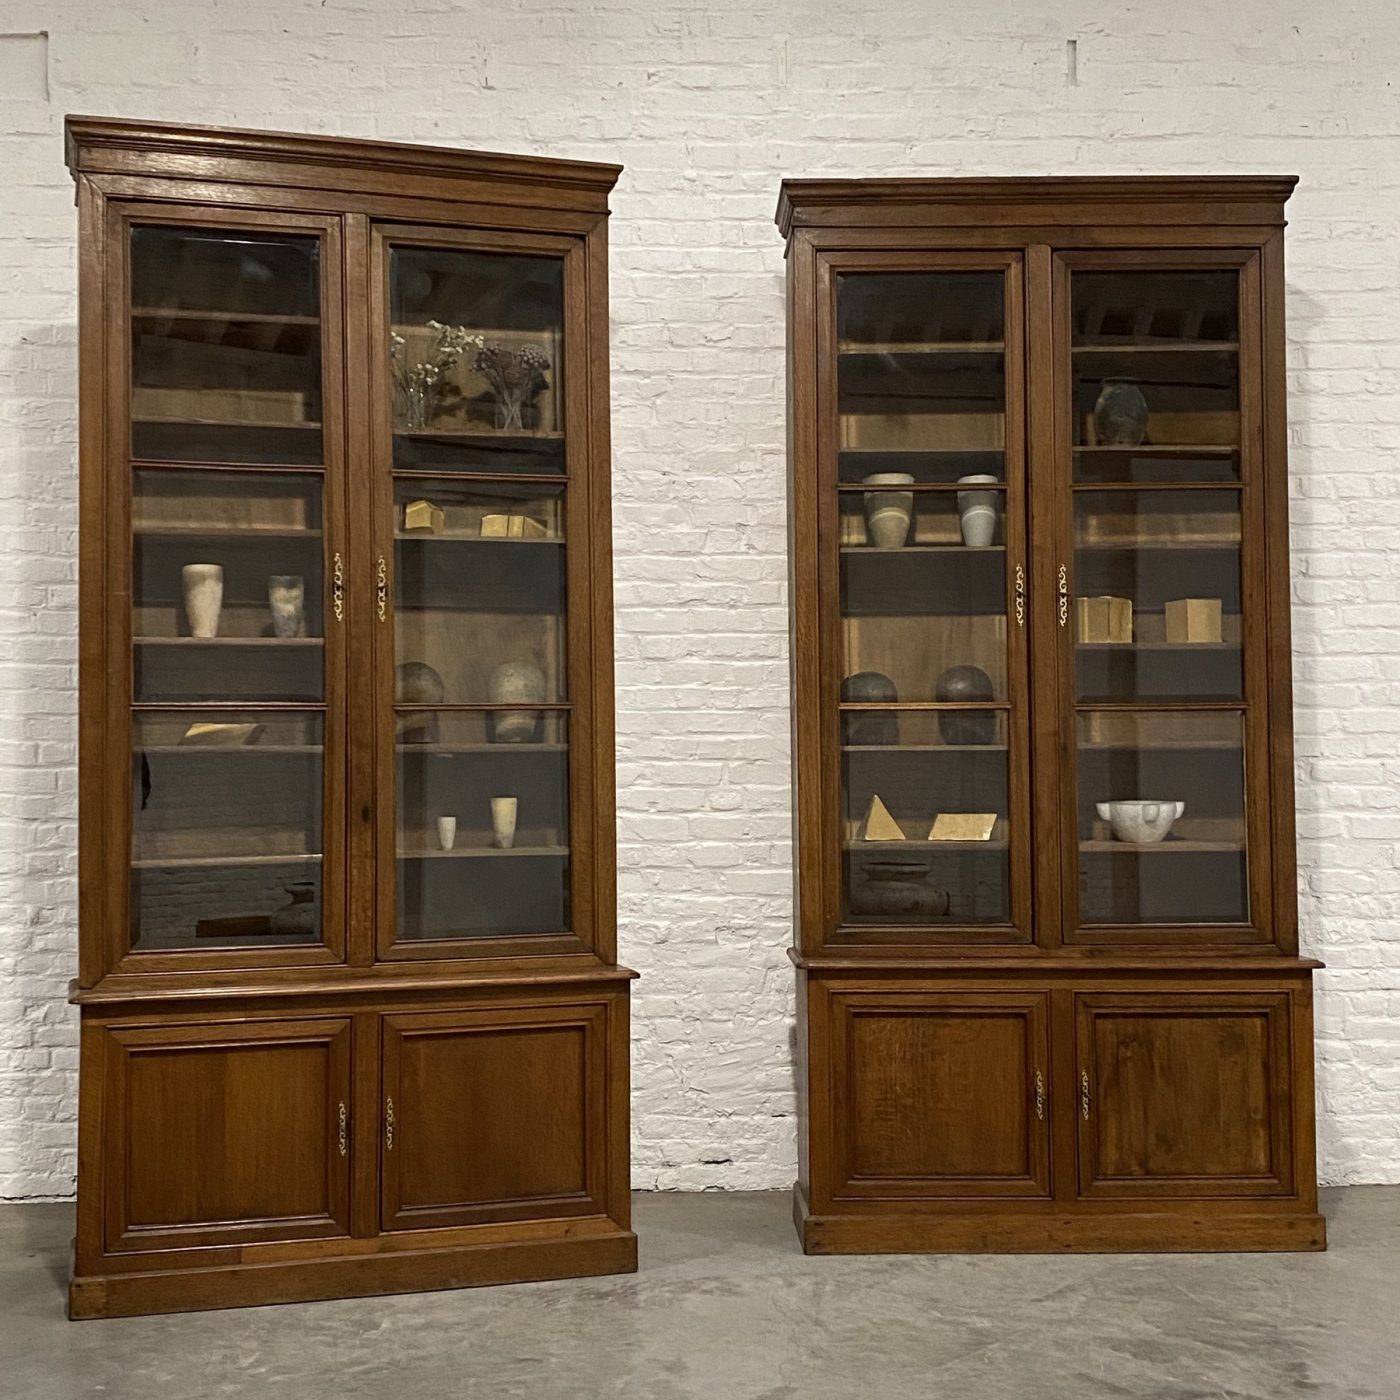 objet-vagabond-oak-bookcase0003